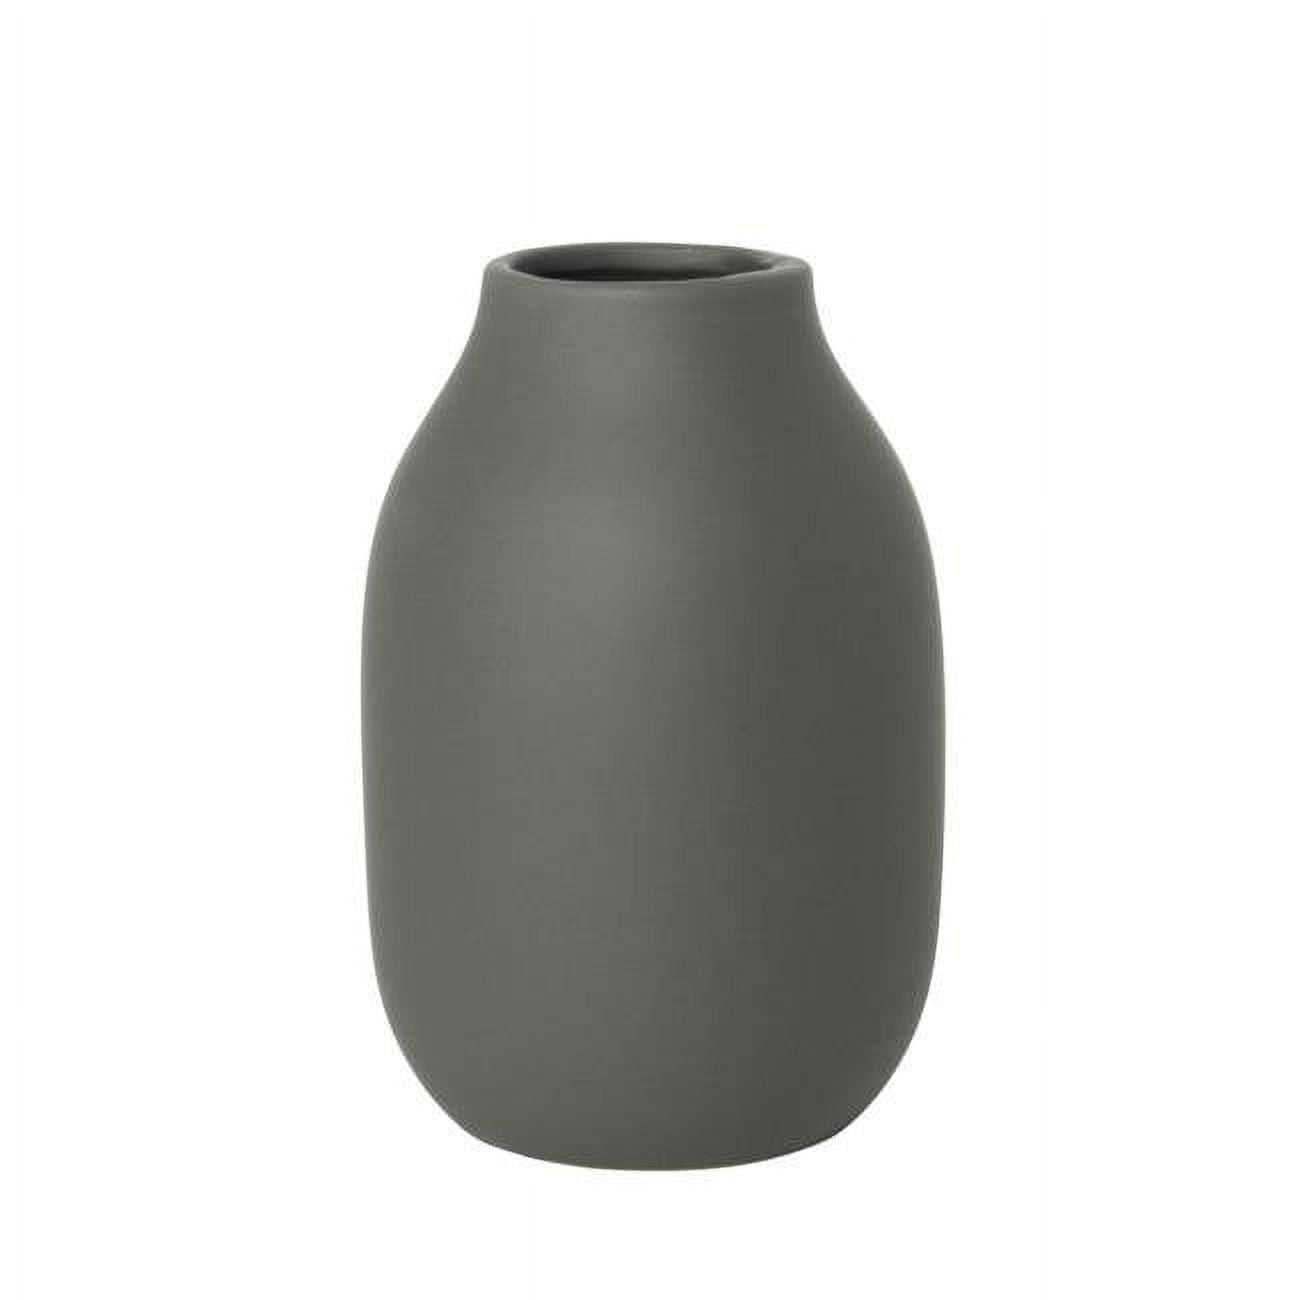 65905 6 X 4 In. Colora Porcelain Vase, Agave Green